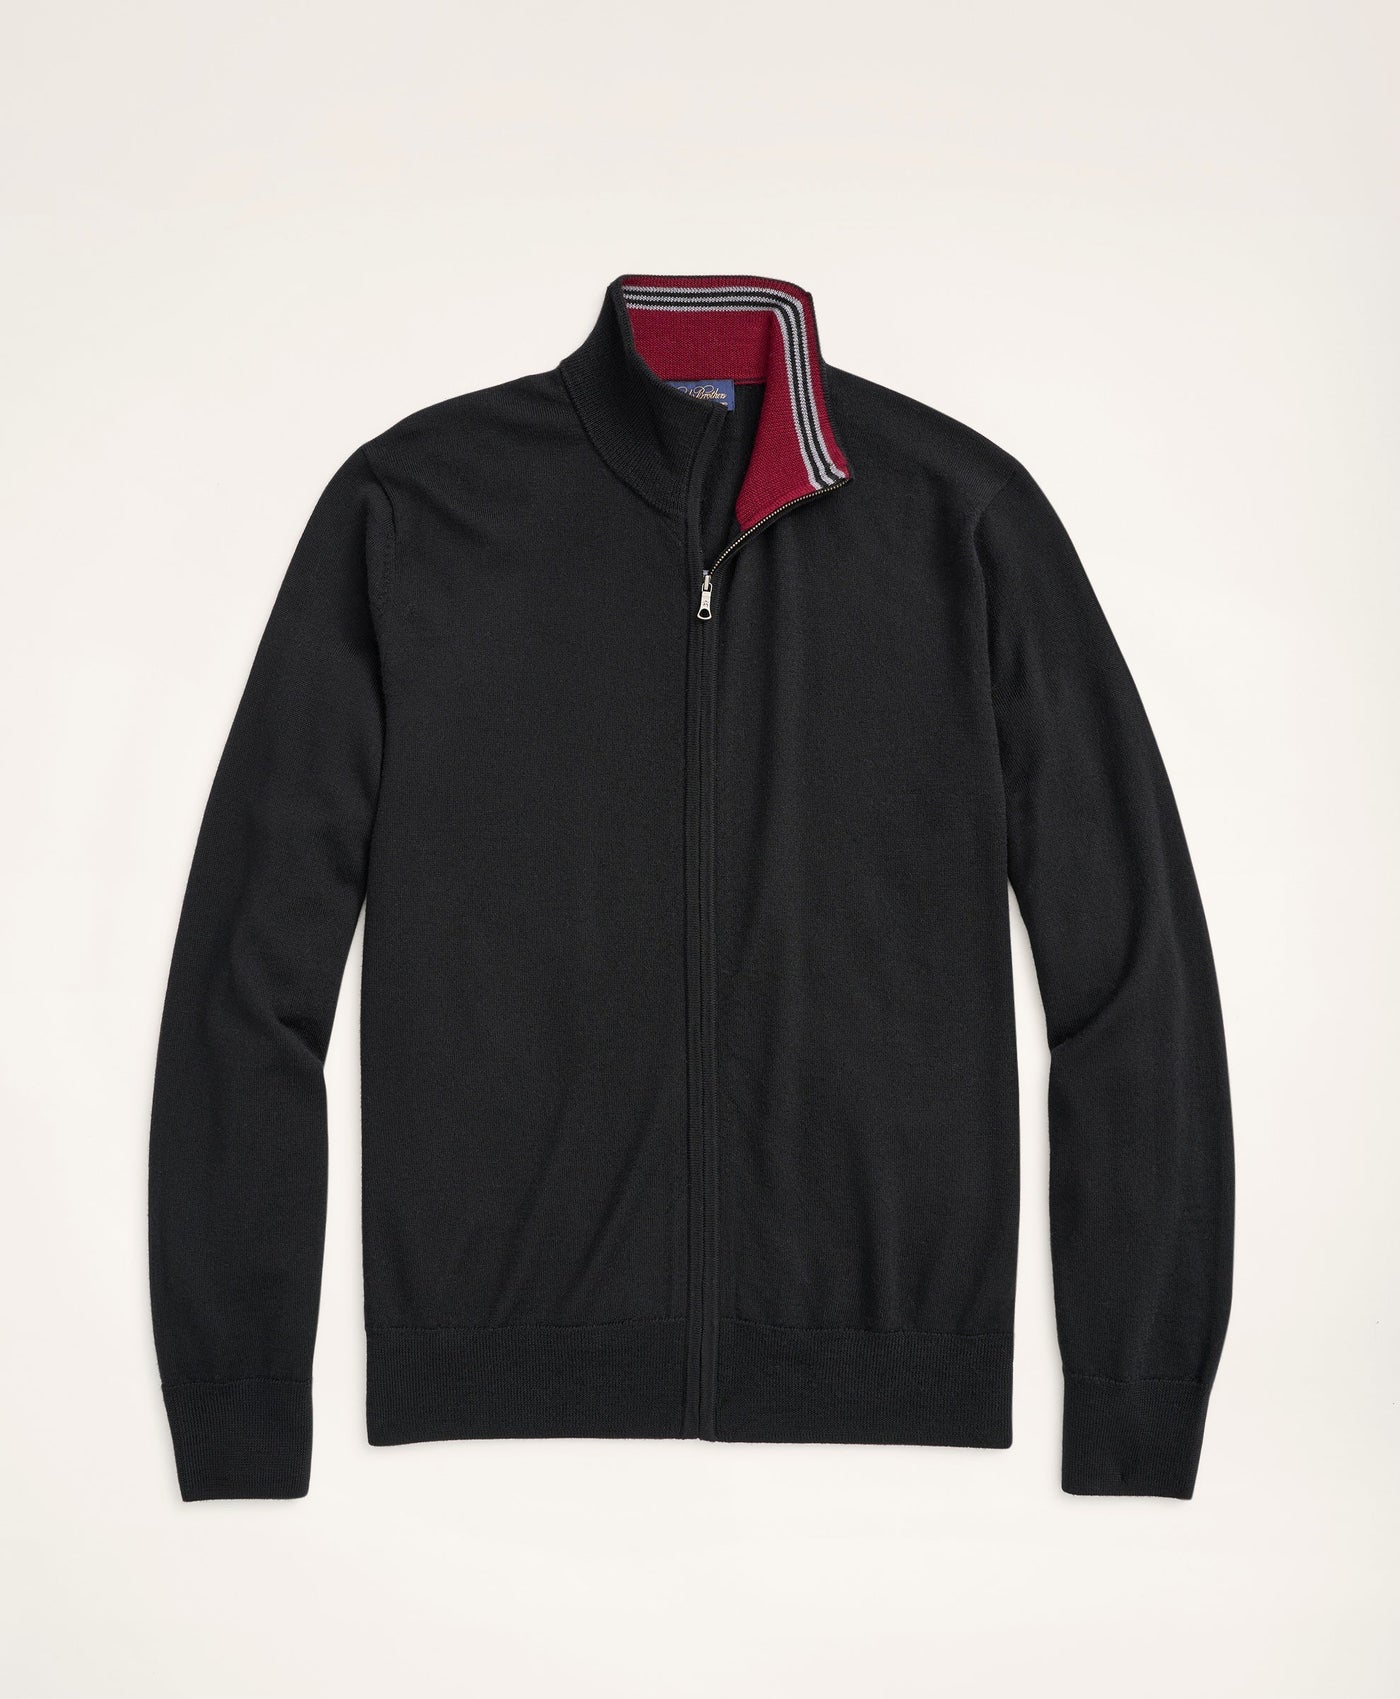 Merino Full-Zip Sweater - Brooks Brothers Canada